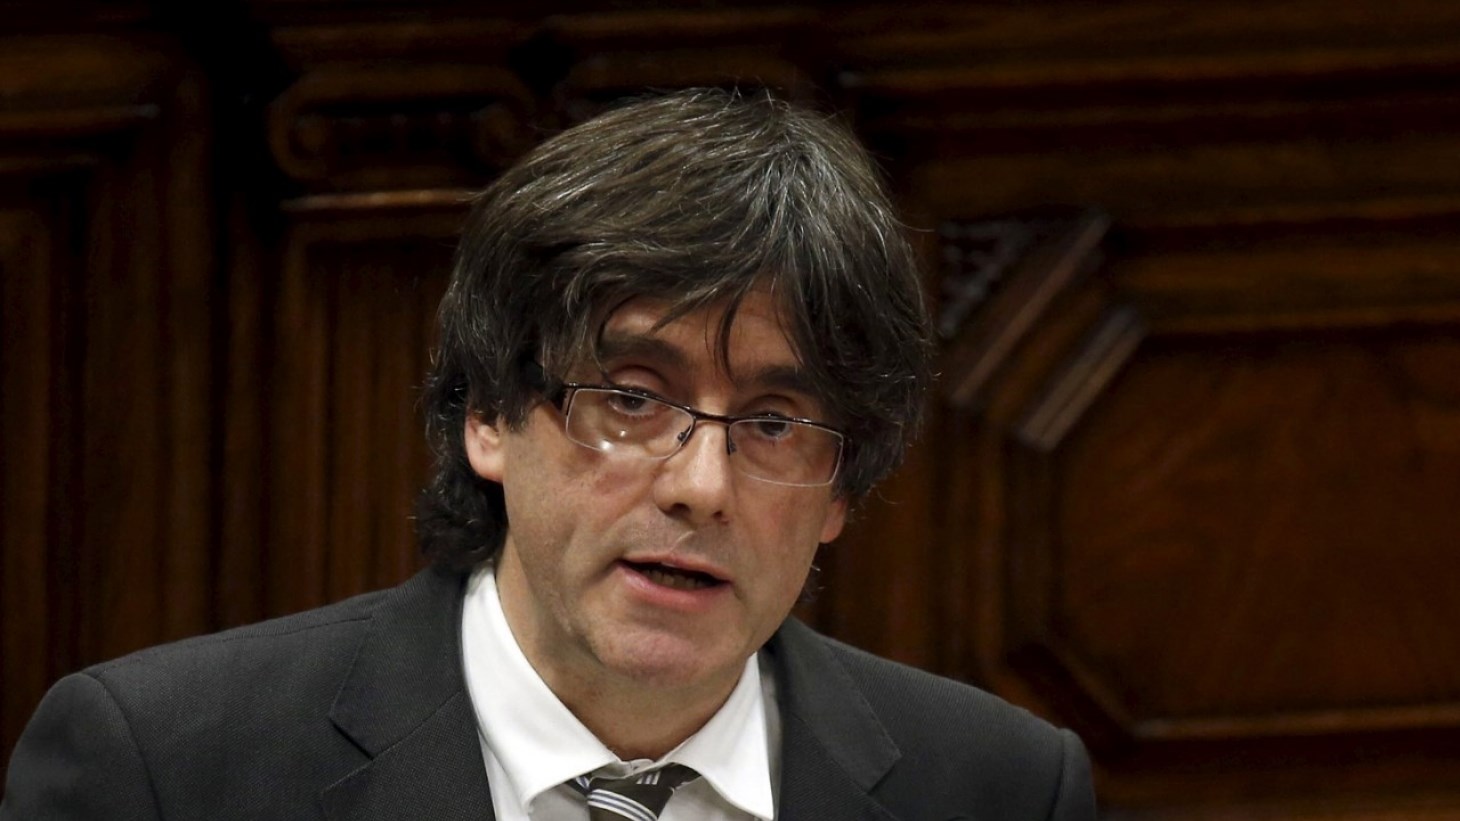 Σύγκληση της ολομέλειας του καταλανικού κοινοβουλίου για να δοθεί απάντηση στη Μαδρίτη ζητάει ο Πουτζντεμόν